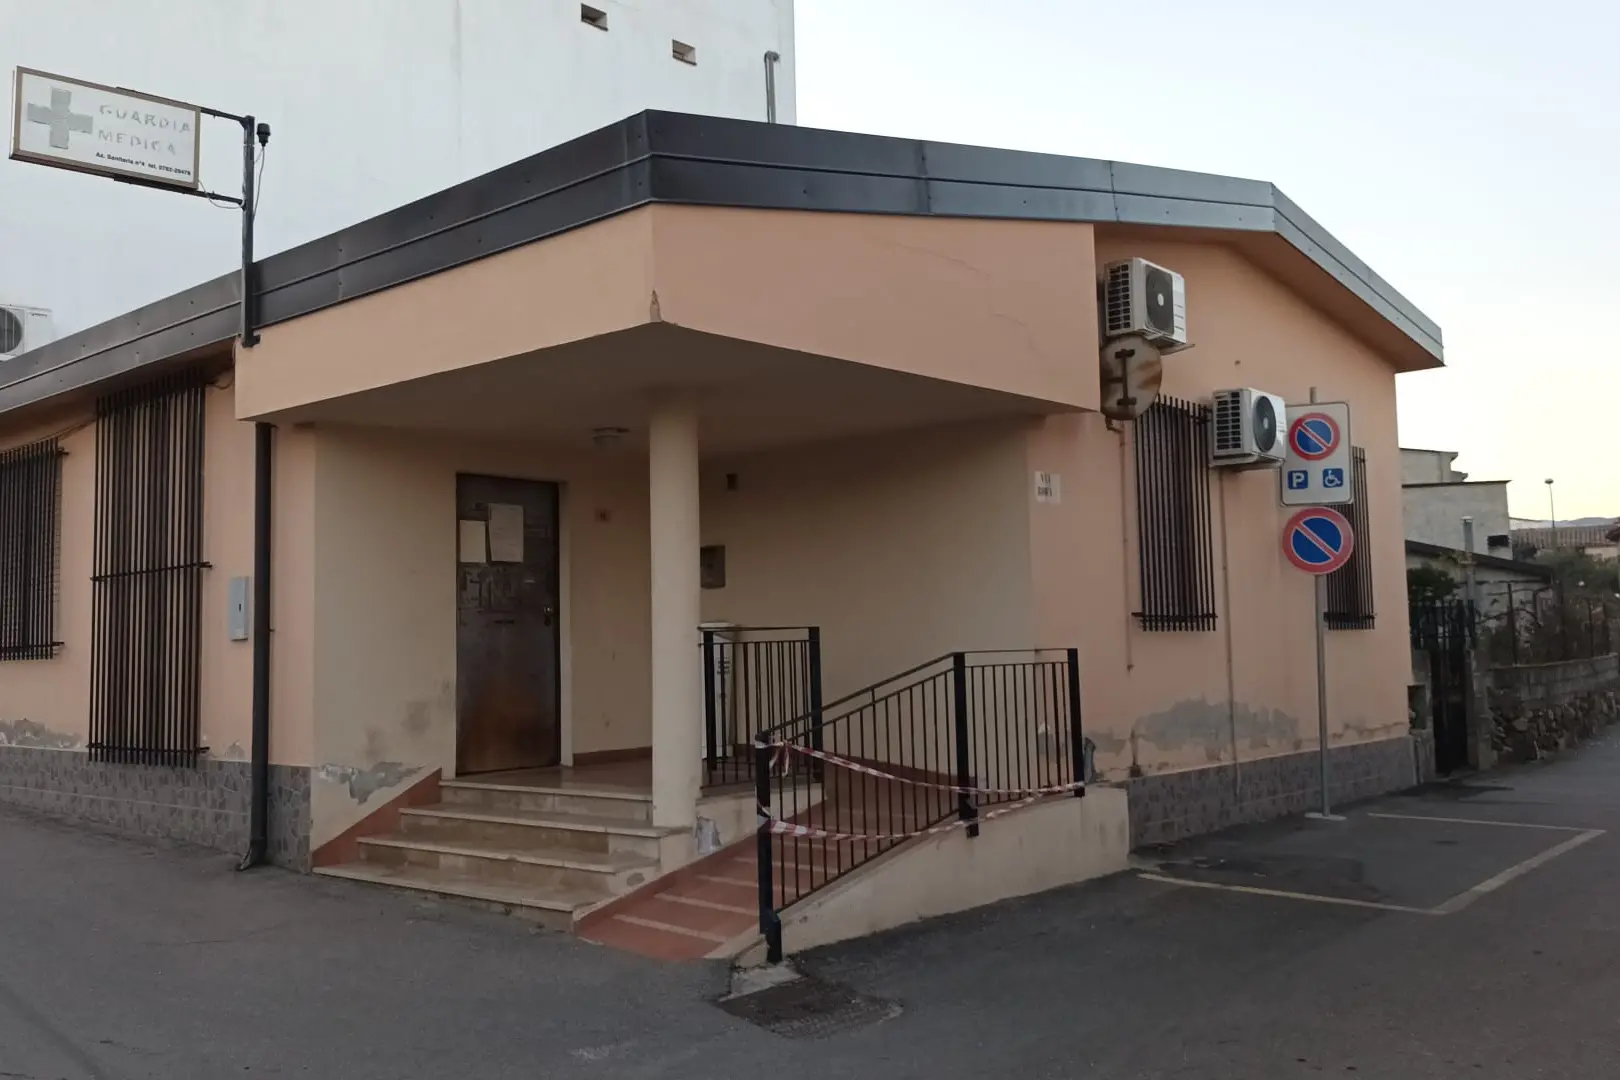 La sede della guardia medica di Bari Sardo (foto Secci)